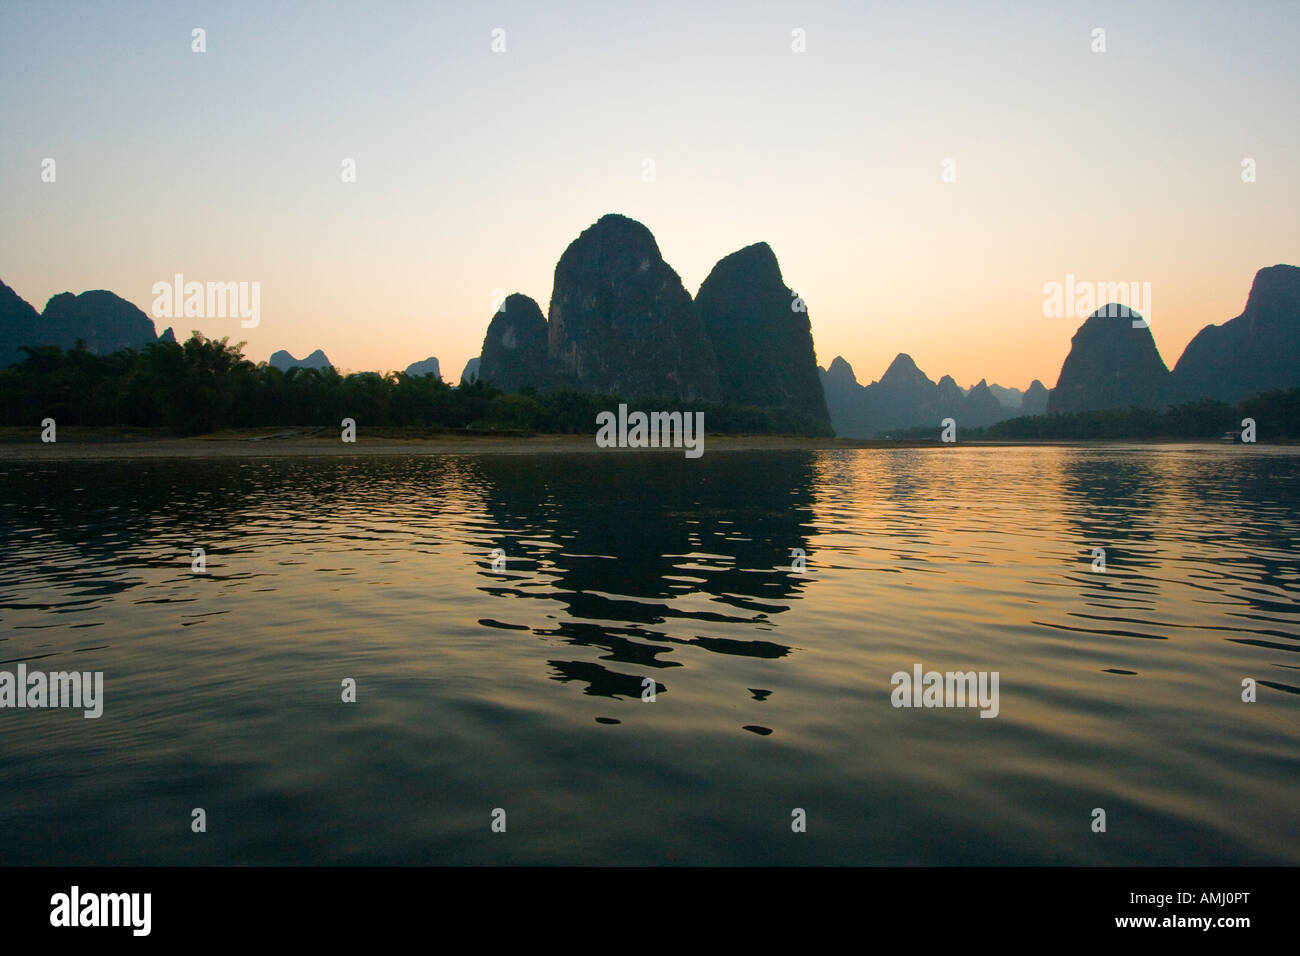 Calcare formazione carsica trovato su 20 RMB nota Crociera sul Fiume Li di Guilin, Yangshuo Cina Foto Stock